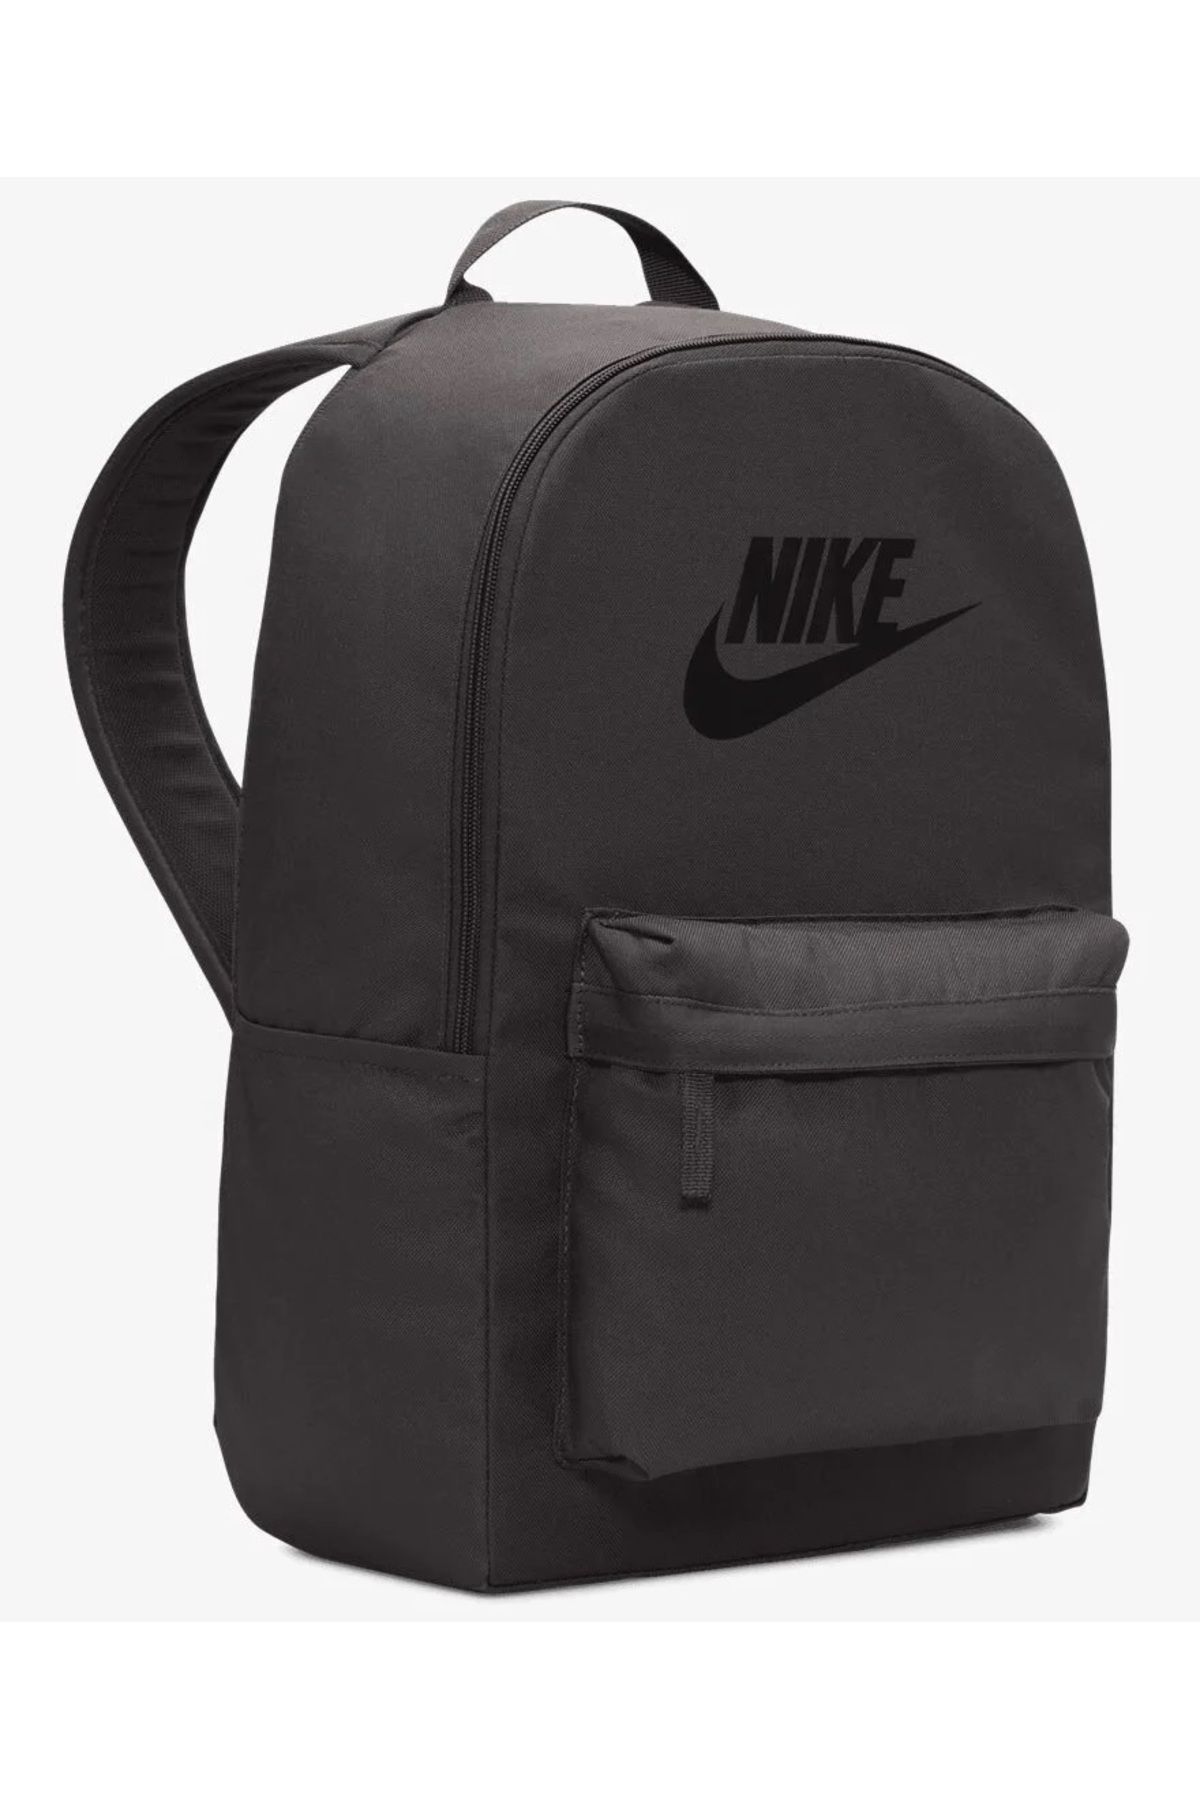 Nike Sırt Çantası Nike Çanta Gri Laptop Gözlü 4244Gri